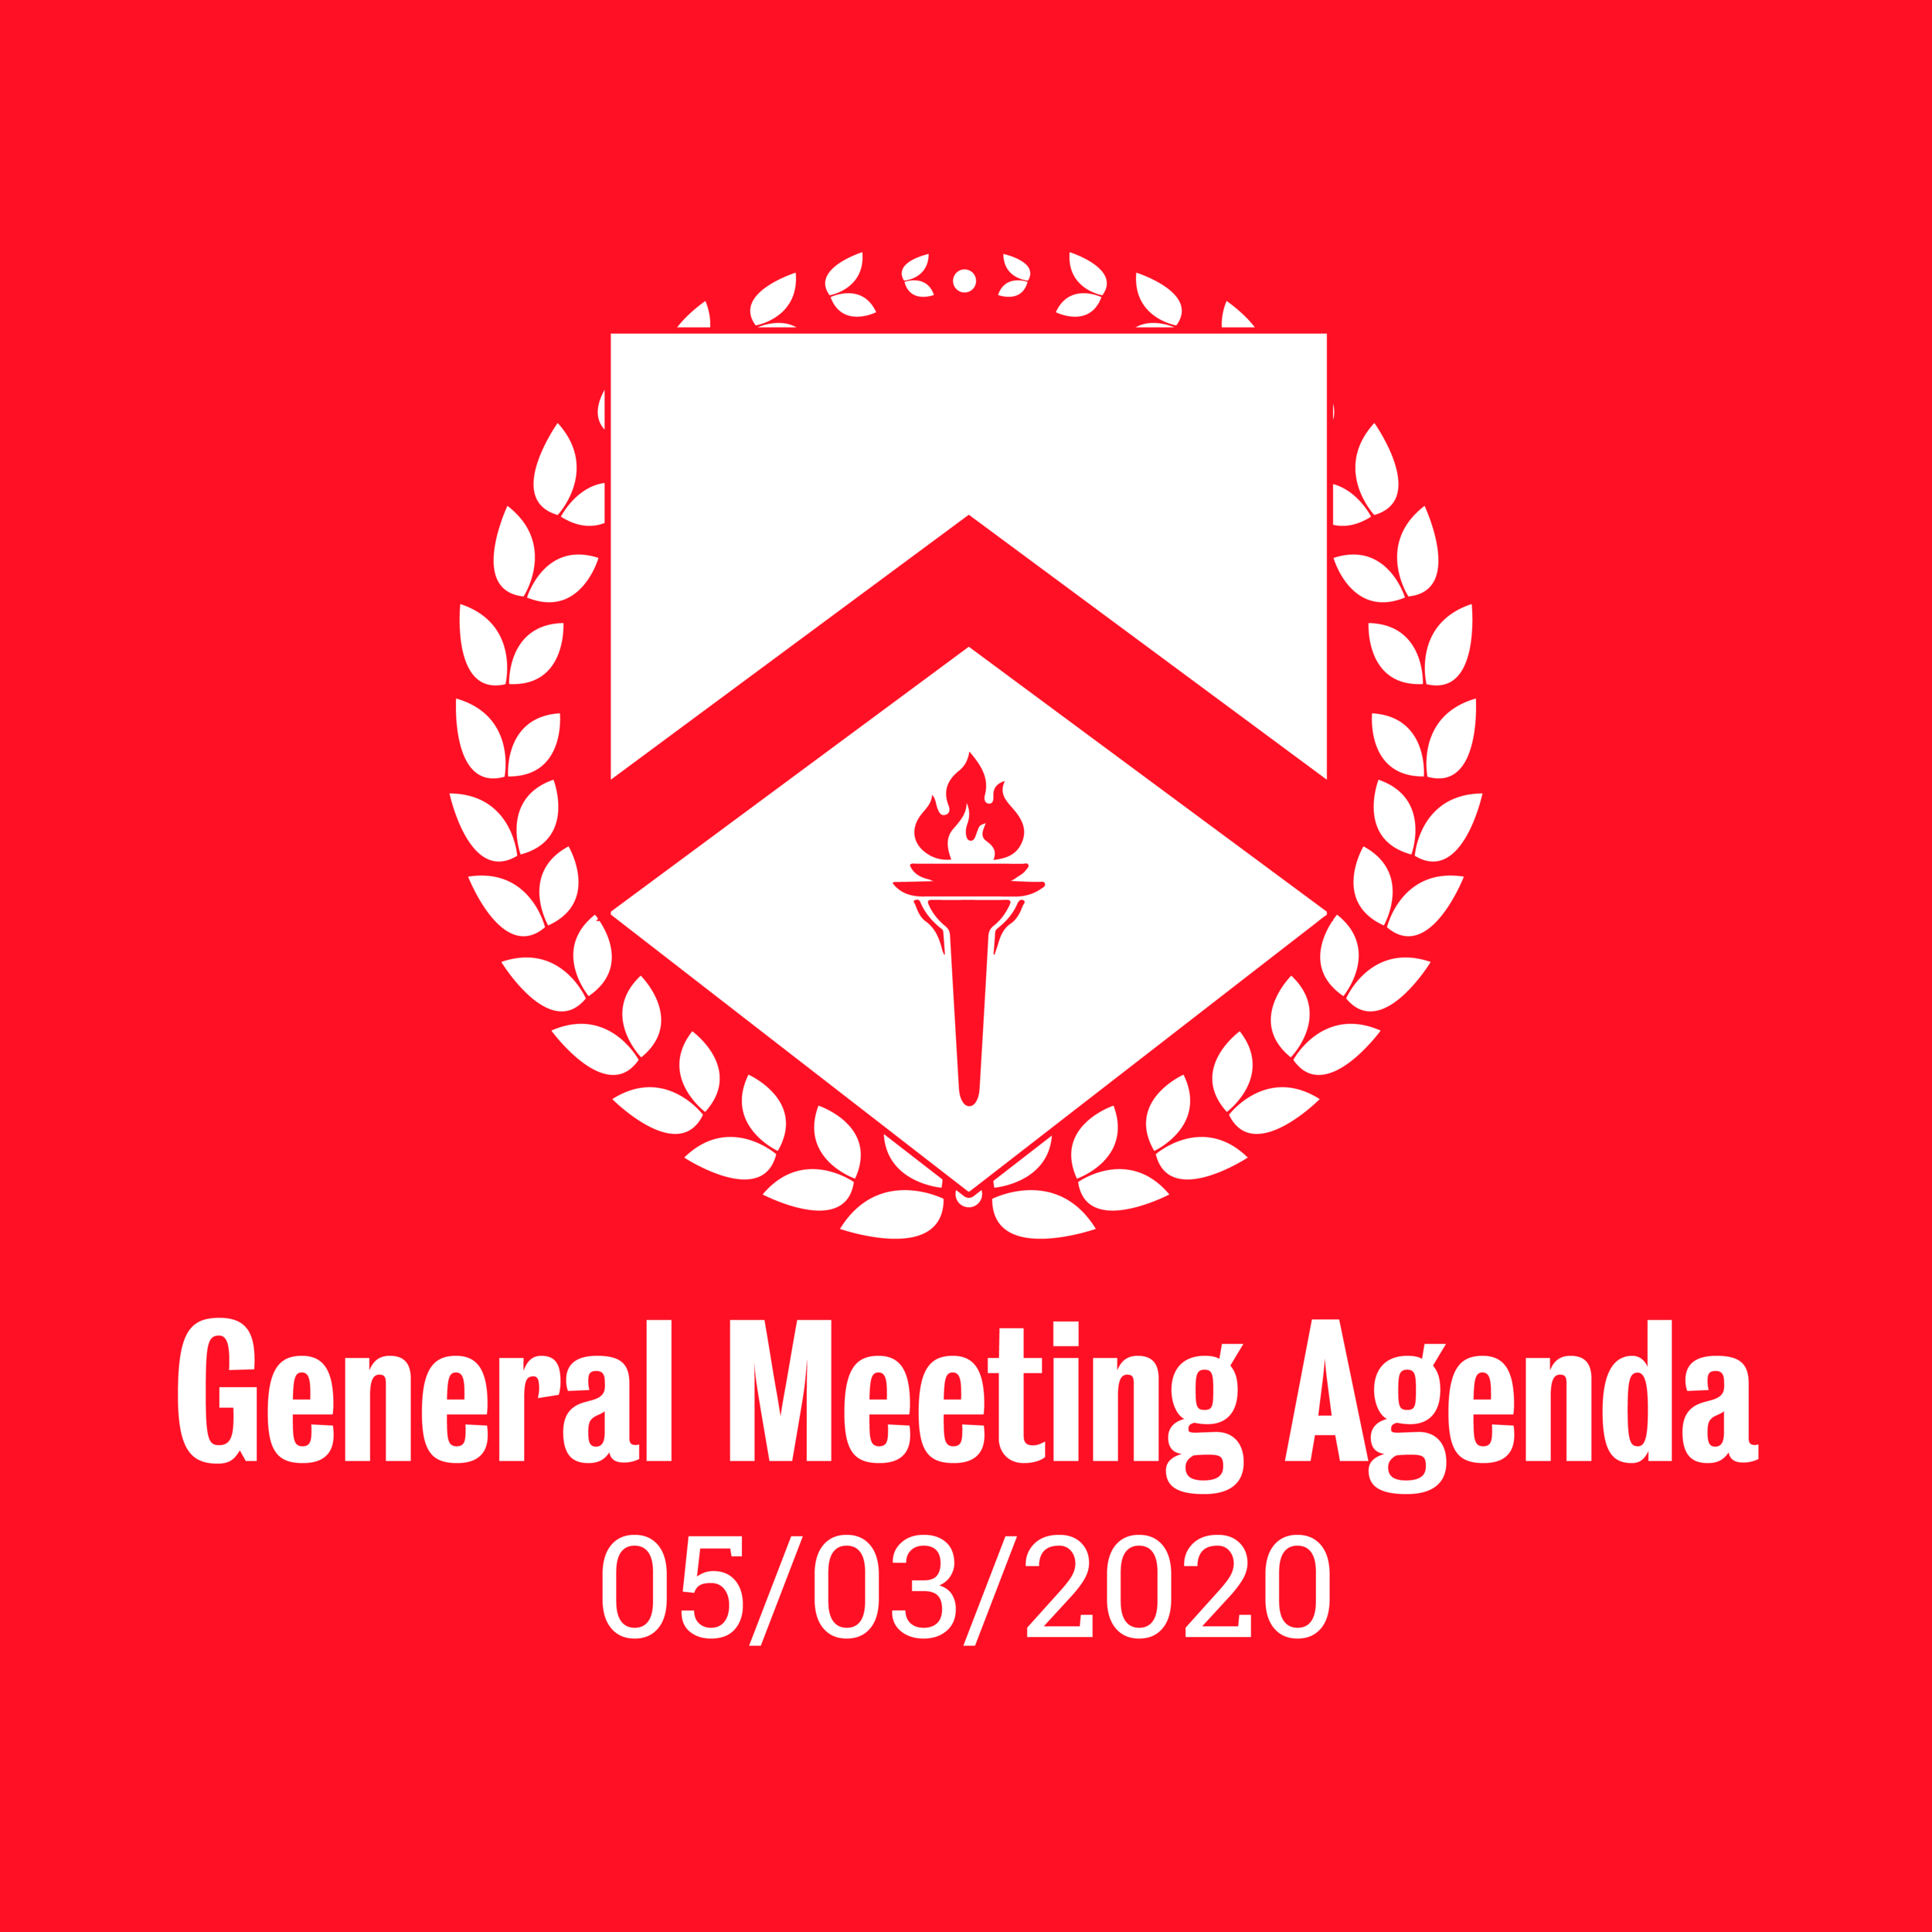 General Meeting Agenda 05/03/2020